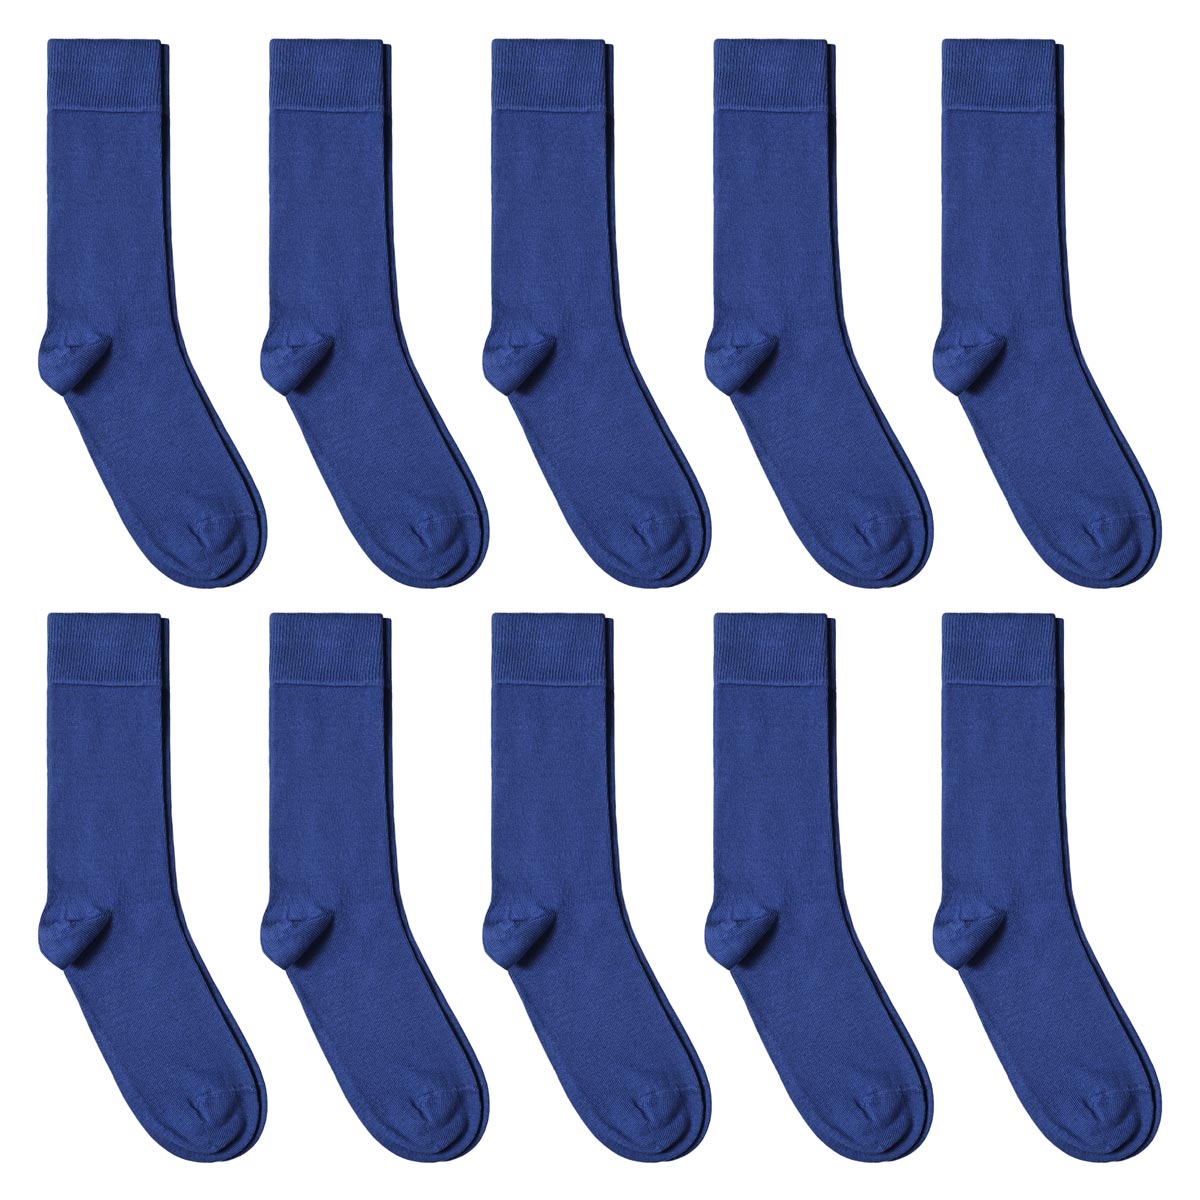 CH-00619_A12-1--_Lot-10-paires-de-chaussettes-homme-bleues-royales-unies